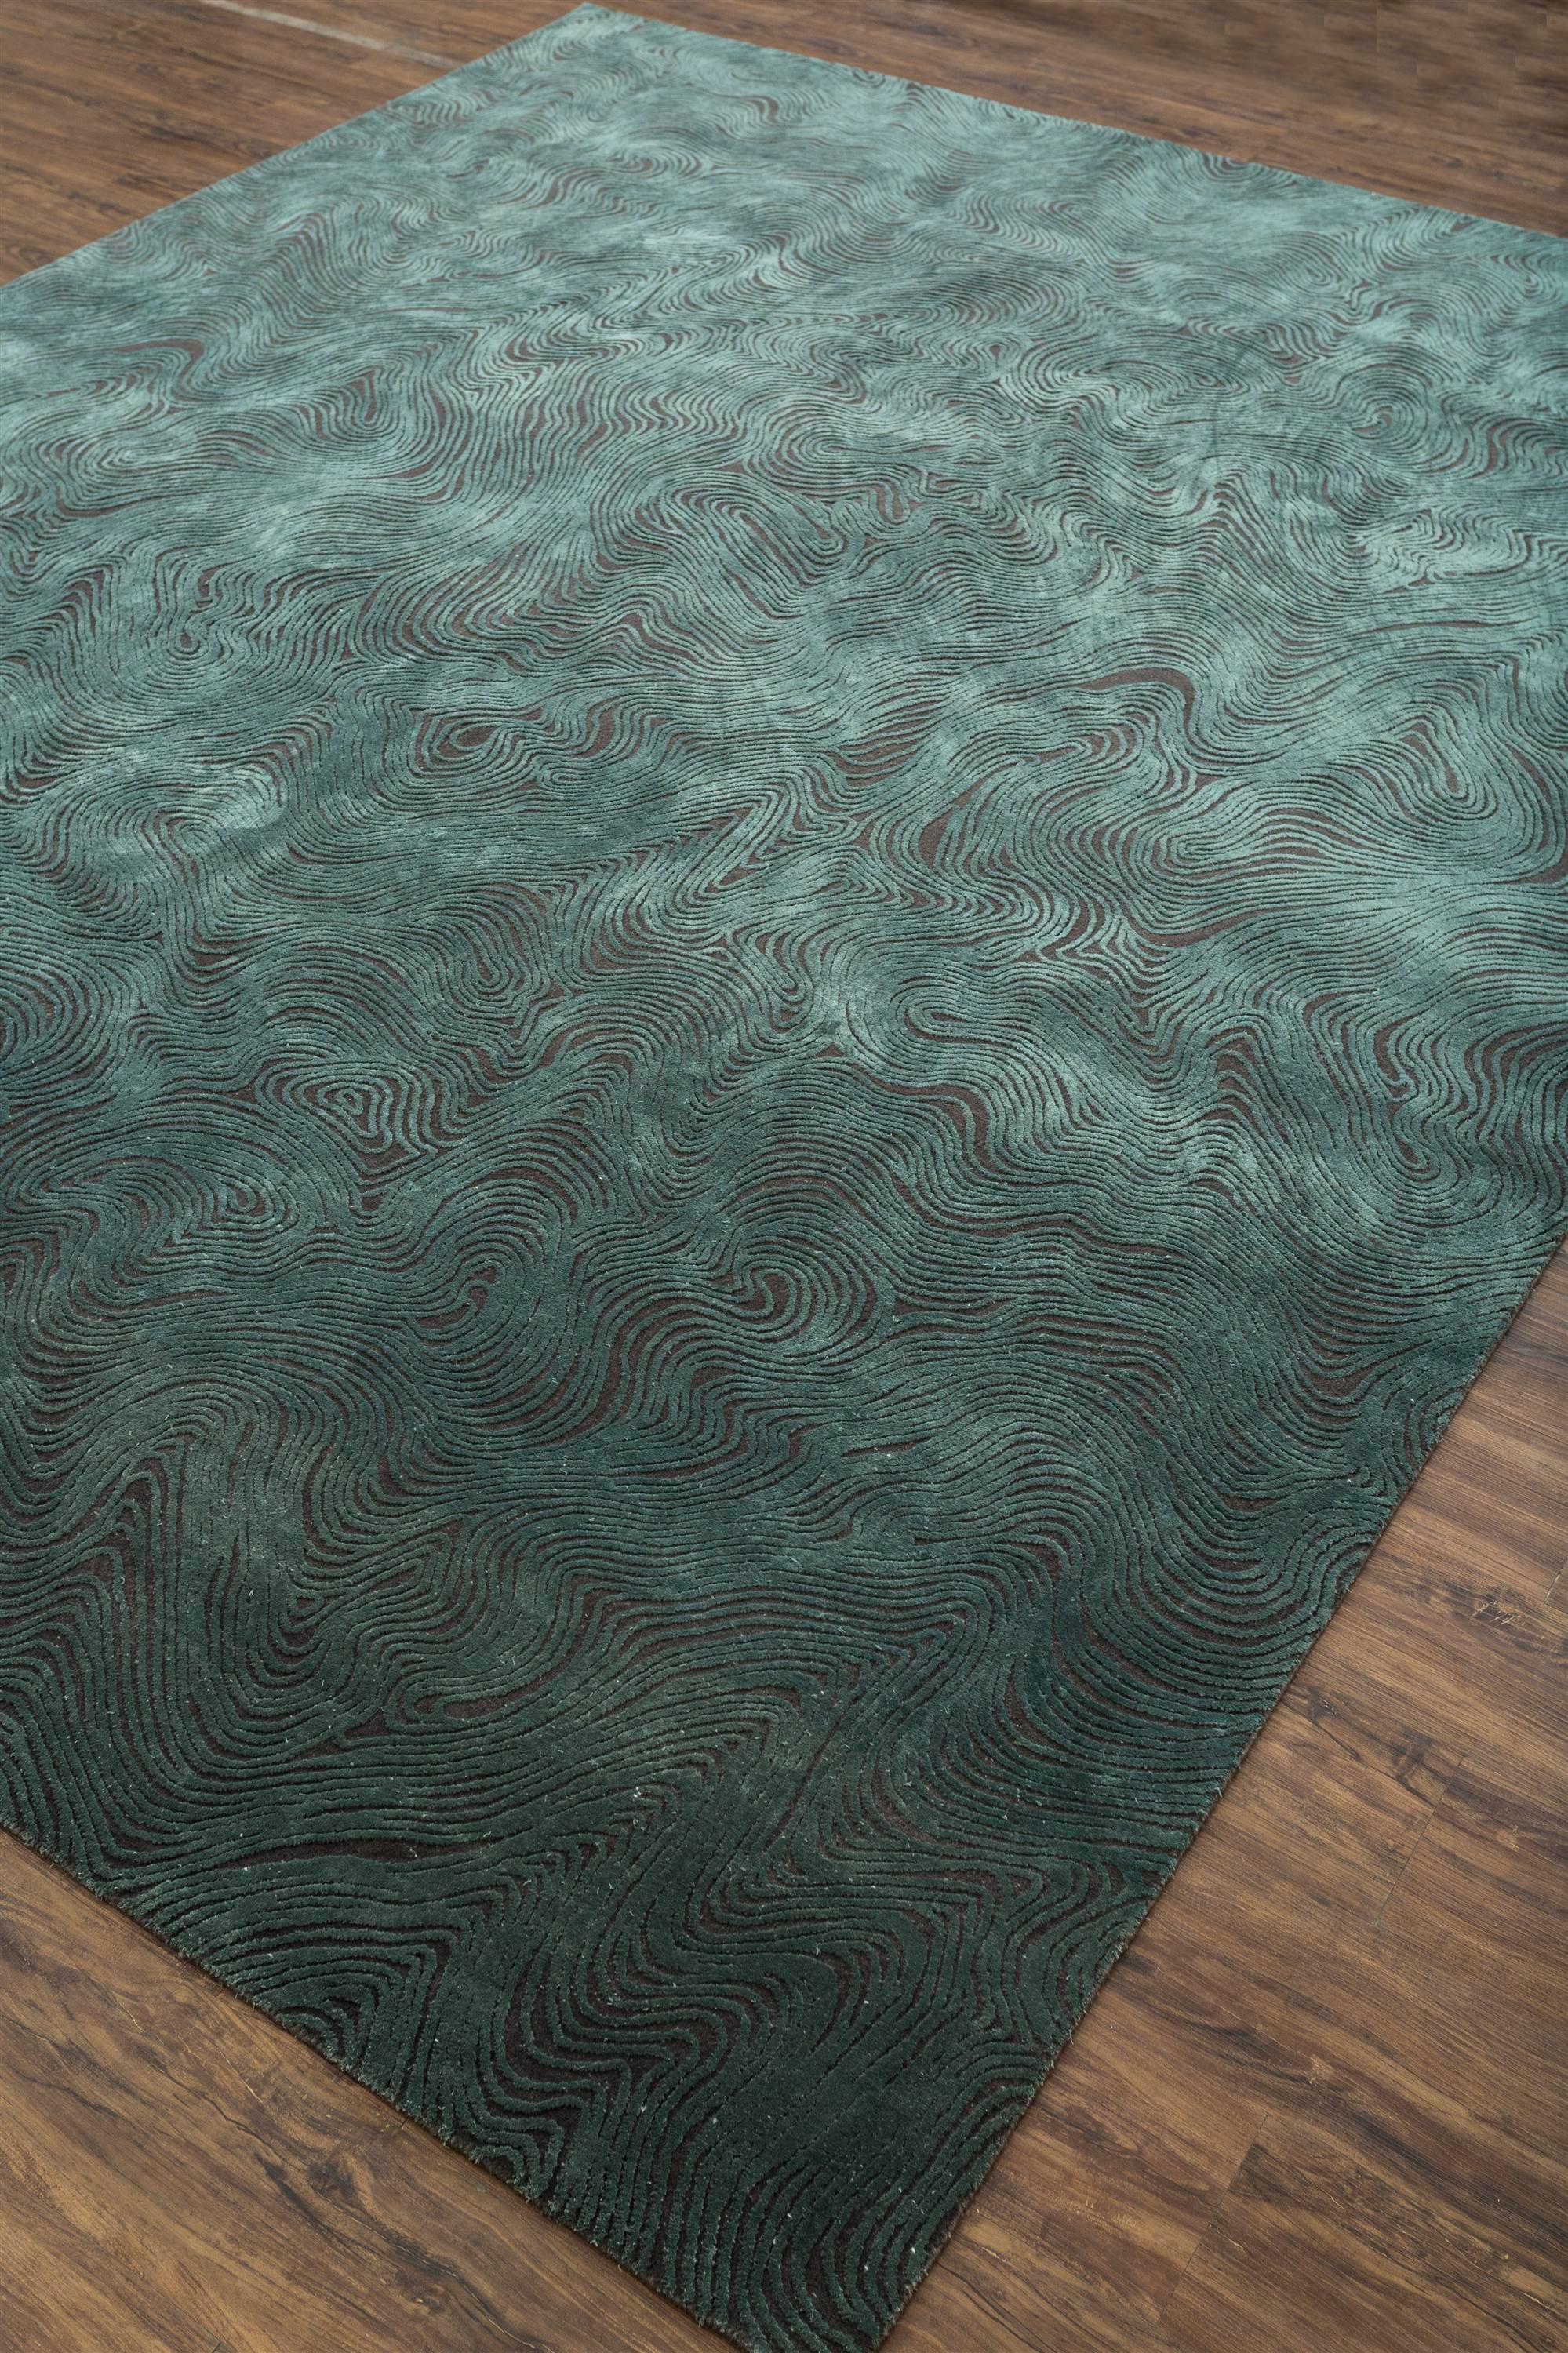 Plongez dans l'allure exquise de ce tapis noué à la main, où la riche couleur de fond réglisse se marie harmonieusement avec la bordure arctique froide, créant une fusion captivante. Fabriqué à la main dans l'Inde rurale, ce chef-d'œuvre raconte une